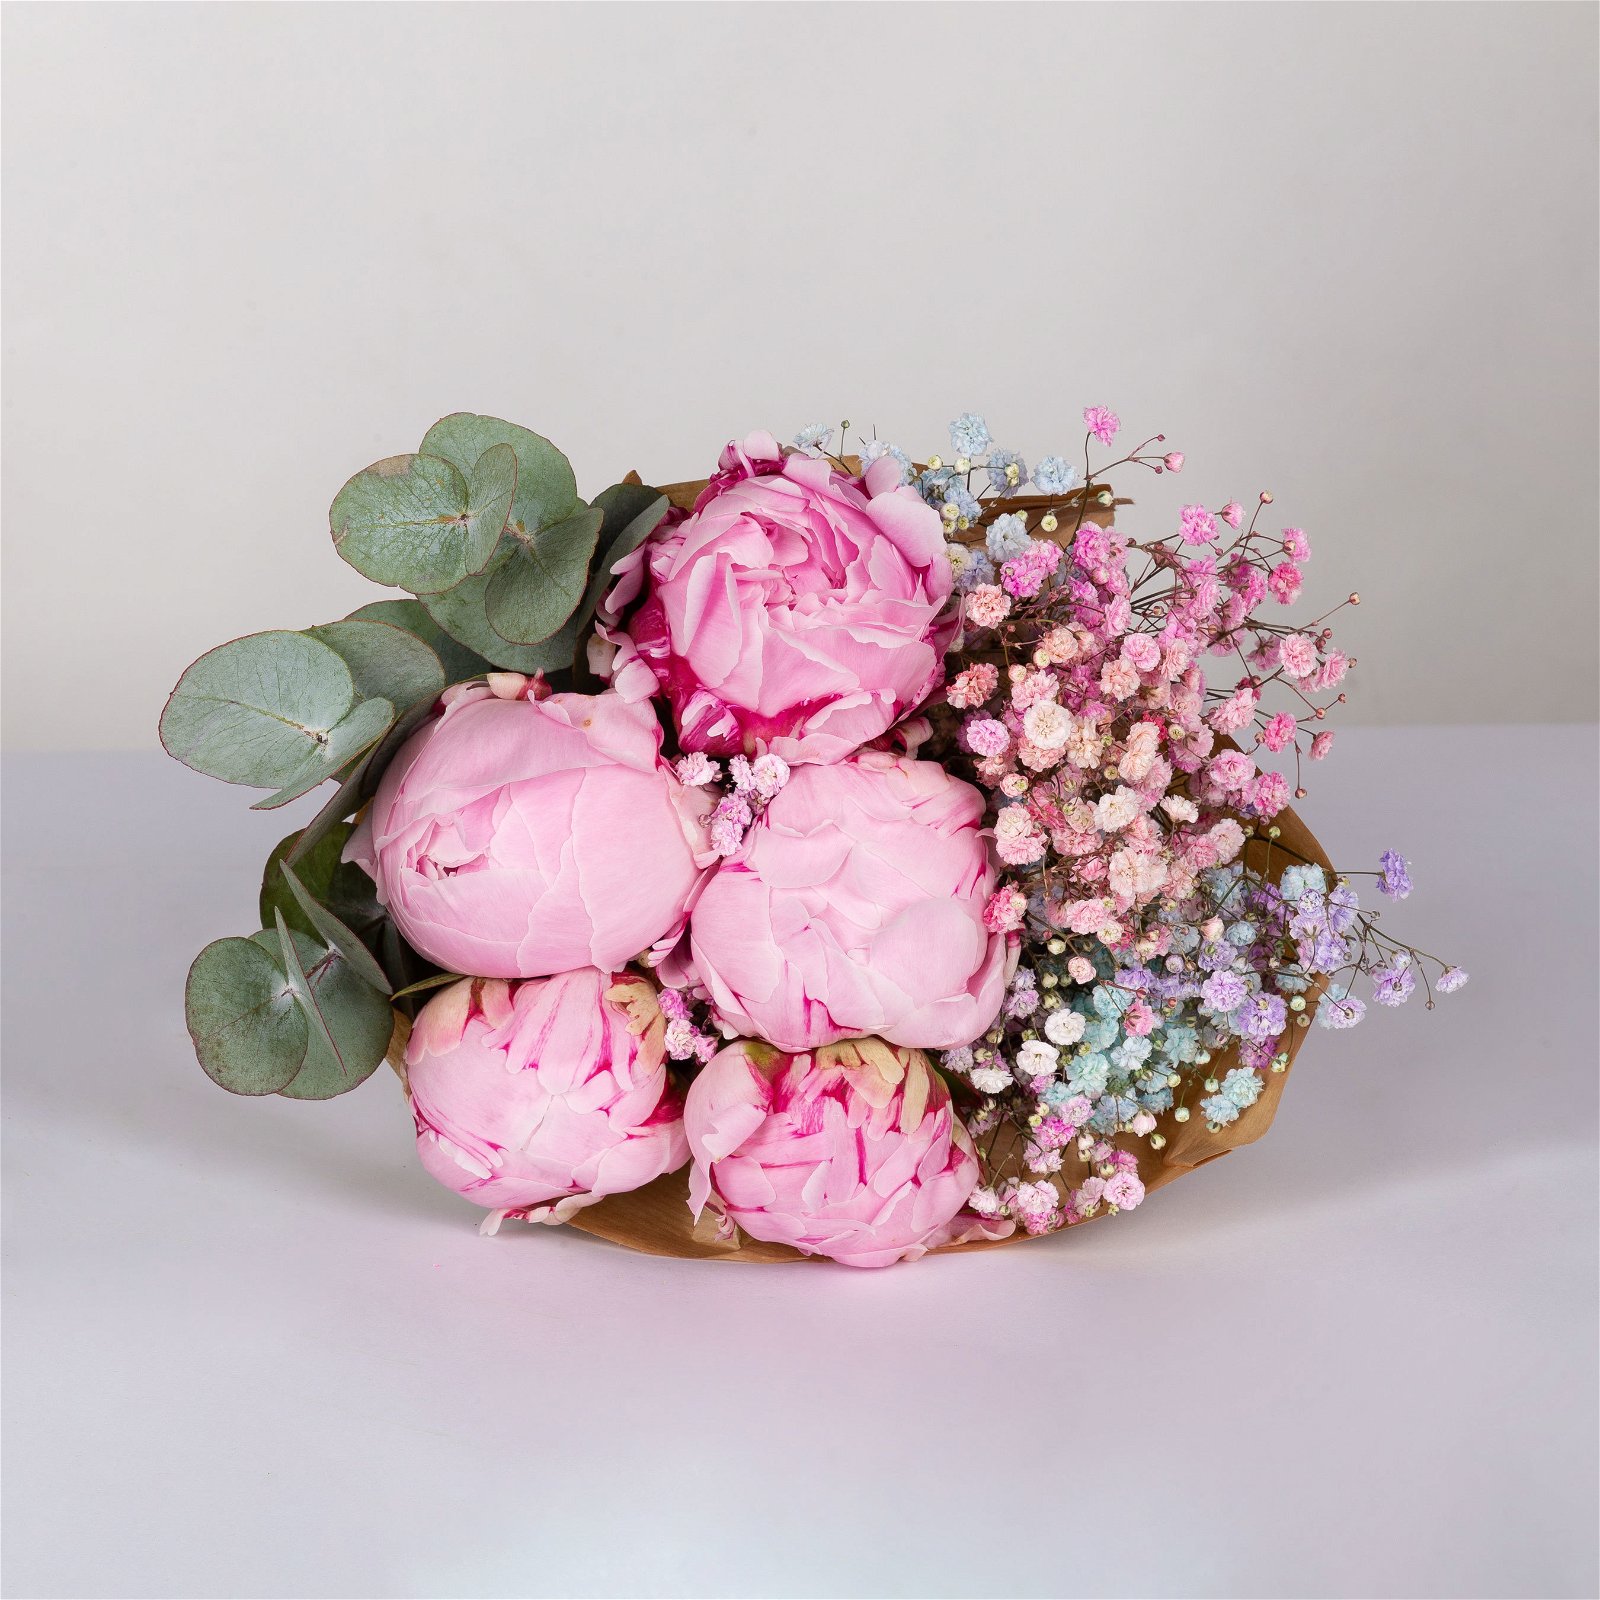 Gemischter Blumenbund 'Blütenpracht' inkl. gratis Grußkarte